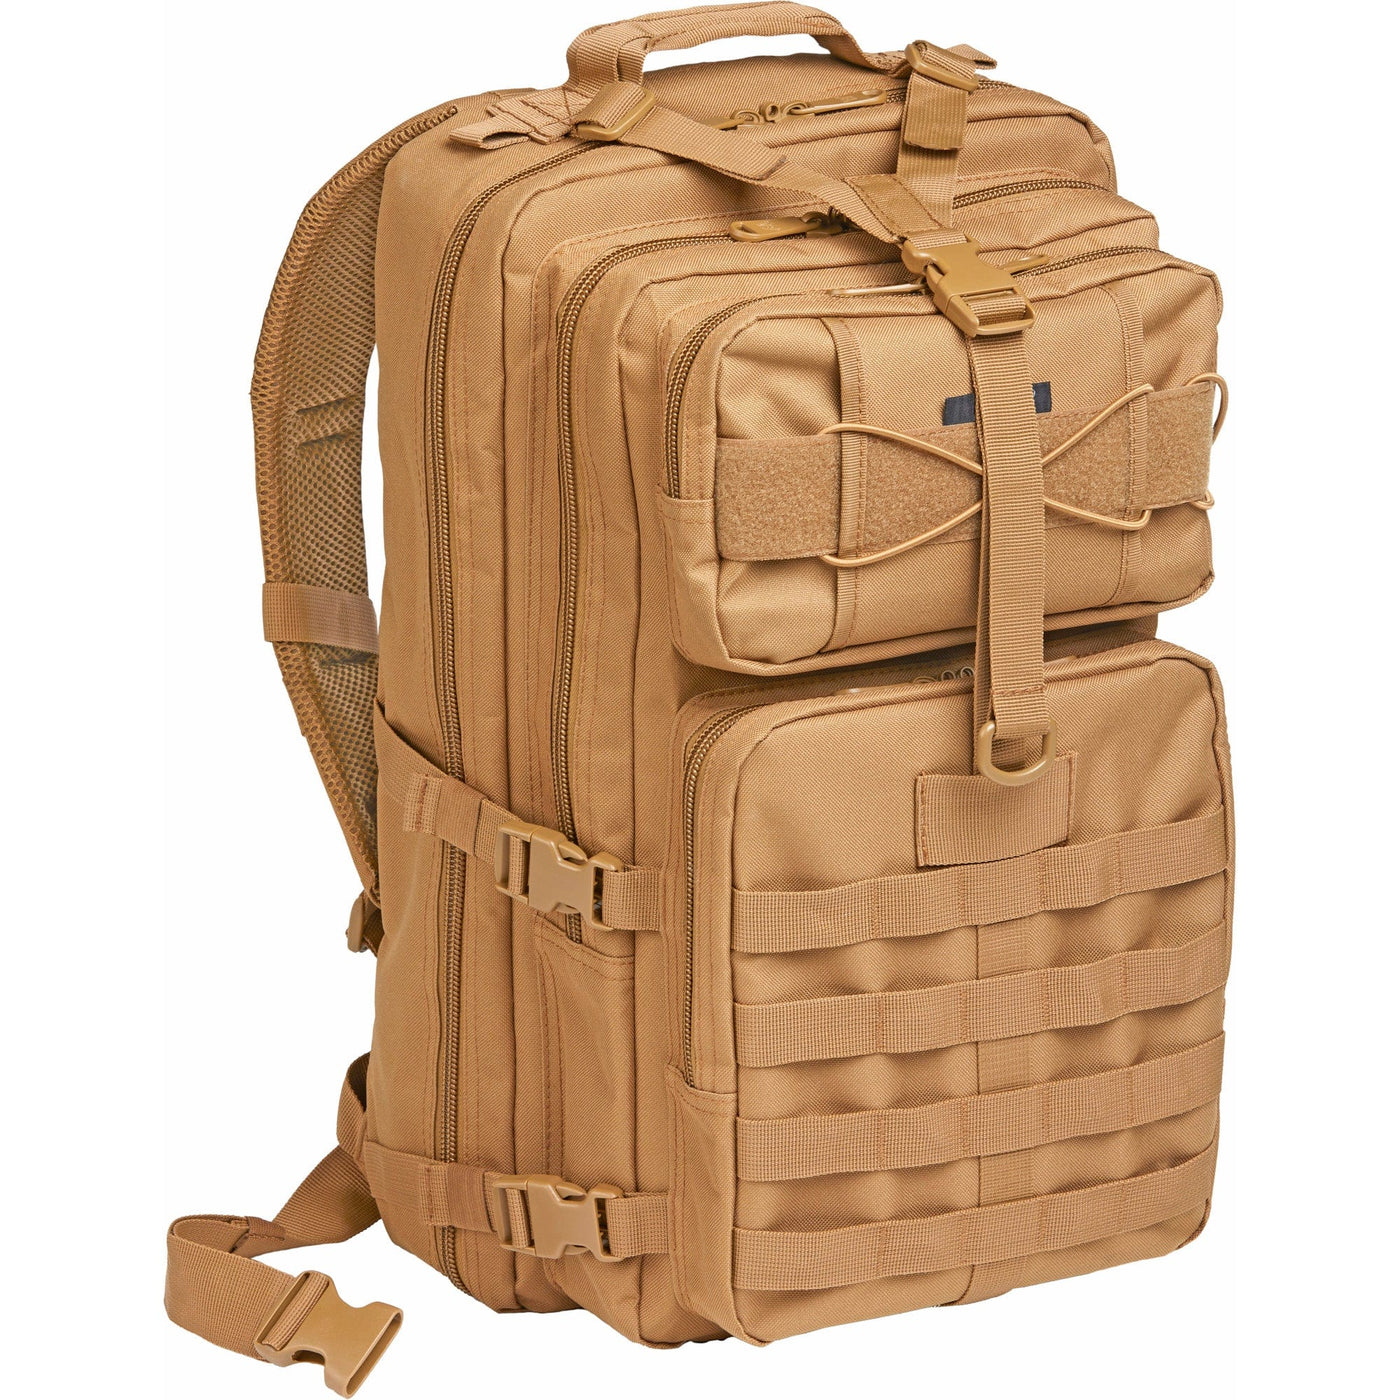 Bulldog Cases Bulldog Med Ranger Backpack - W/ Molle Tan Soft Gun Cases